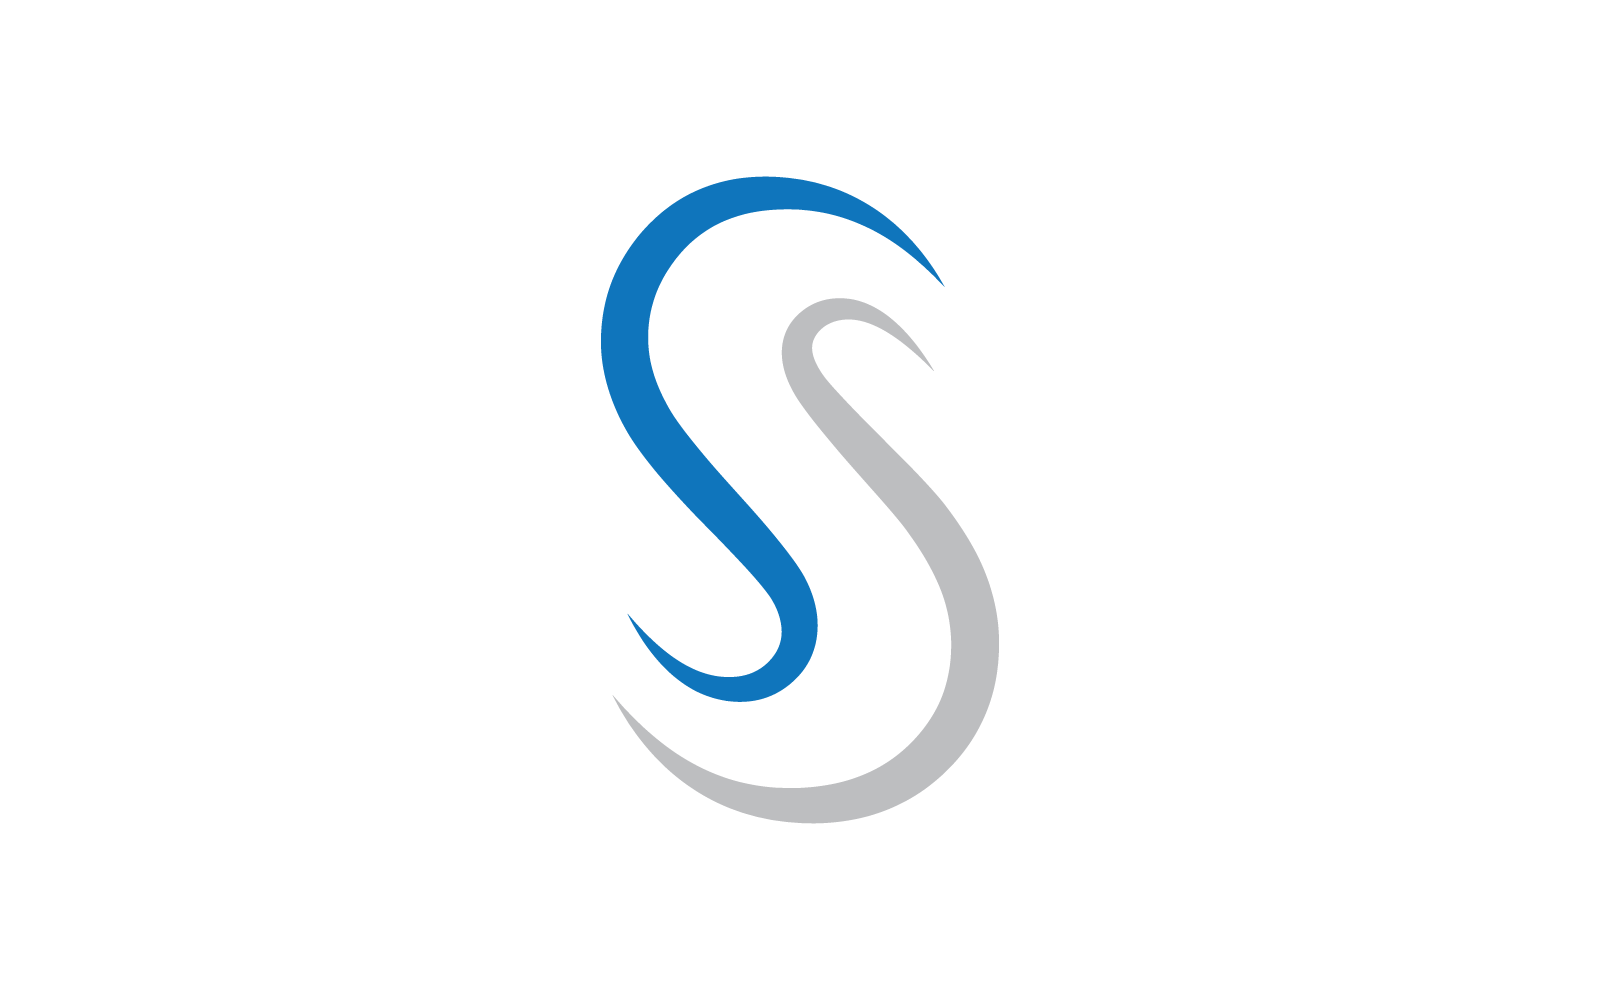 Modern Initial S letter alphabet font logo vector design